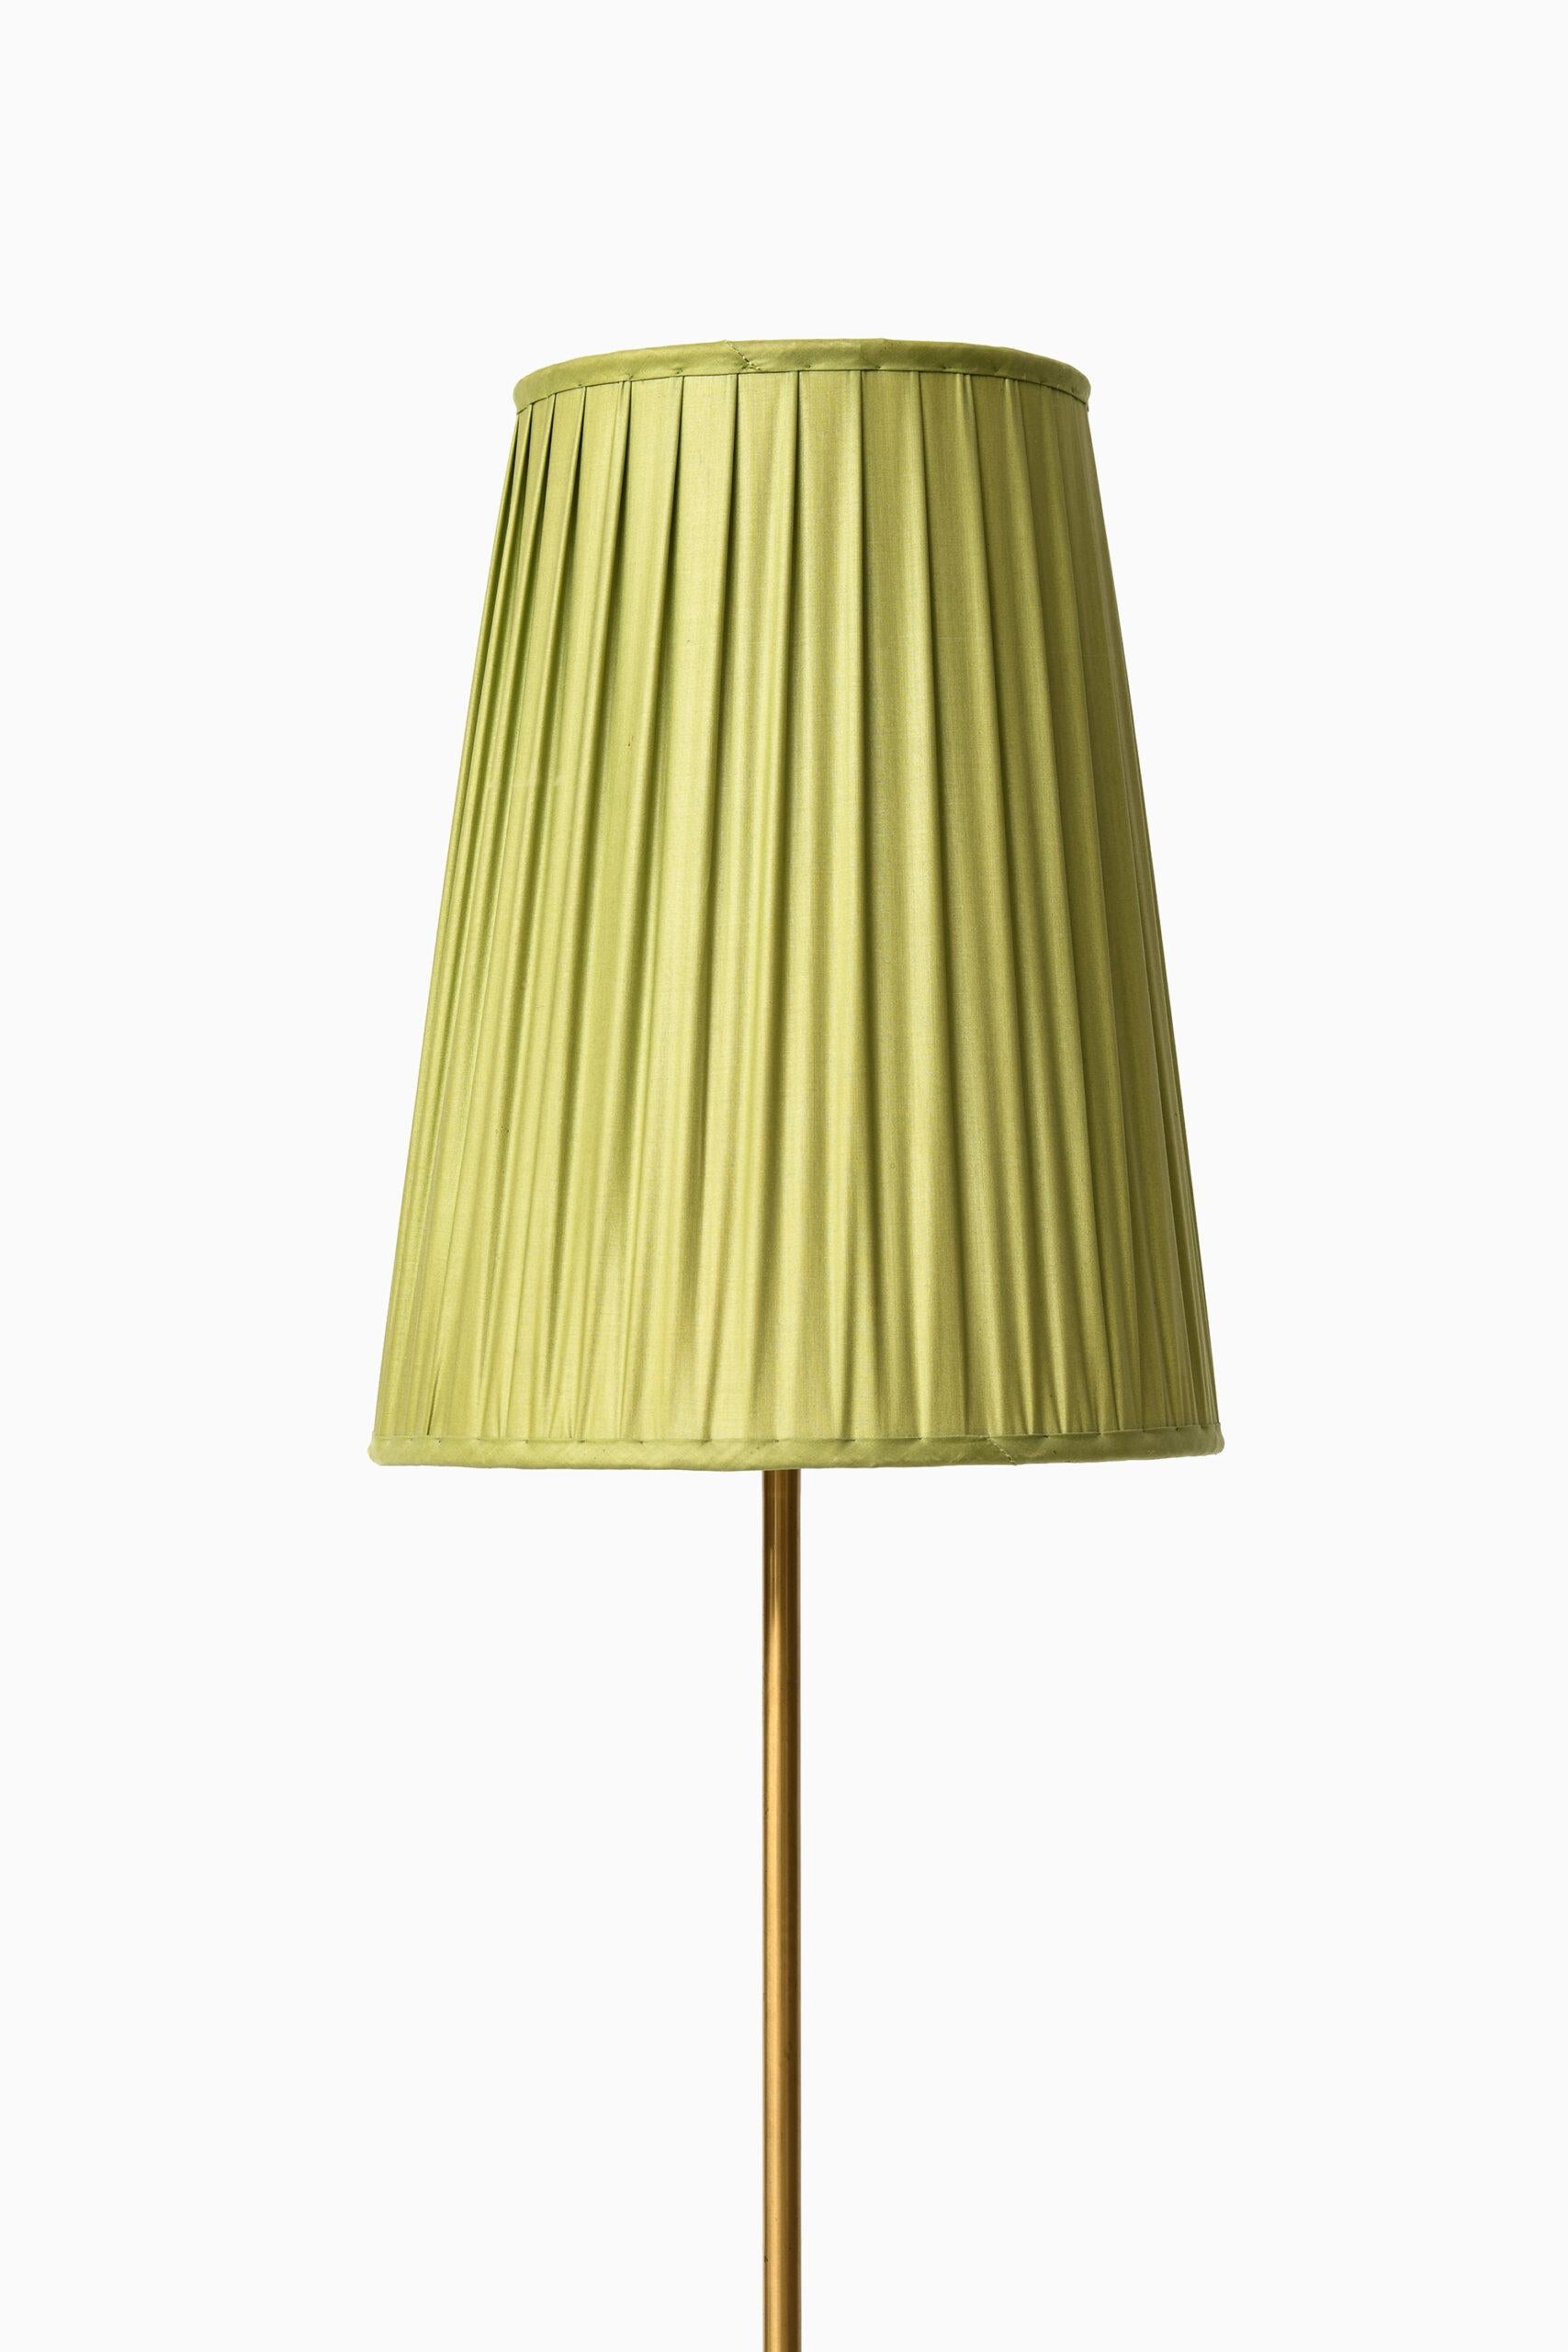 Très rare lampadaire réglable en hauteur modèle 544 conçu par Hans Bergström. Produit par Ateljé Lyktan à Åhus, Suède. Dimensions (L x P x H) : 24 x 24 x 160-200 cm.